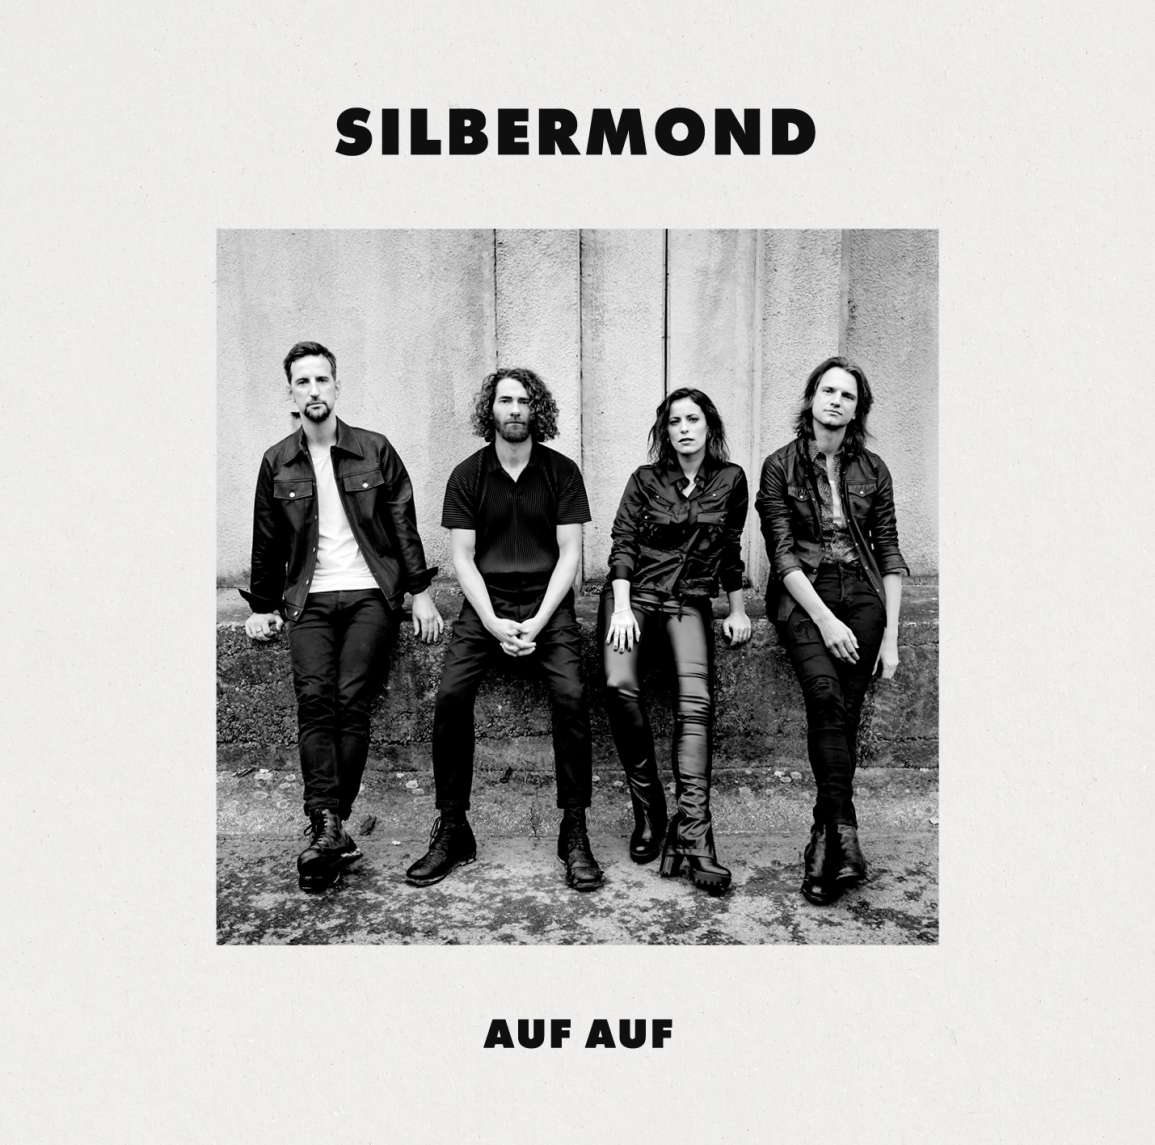 Silbermond AUF AUF cover artwork